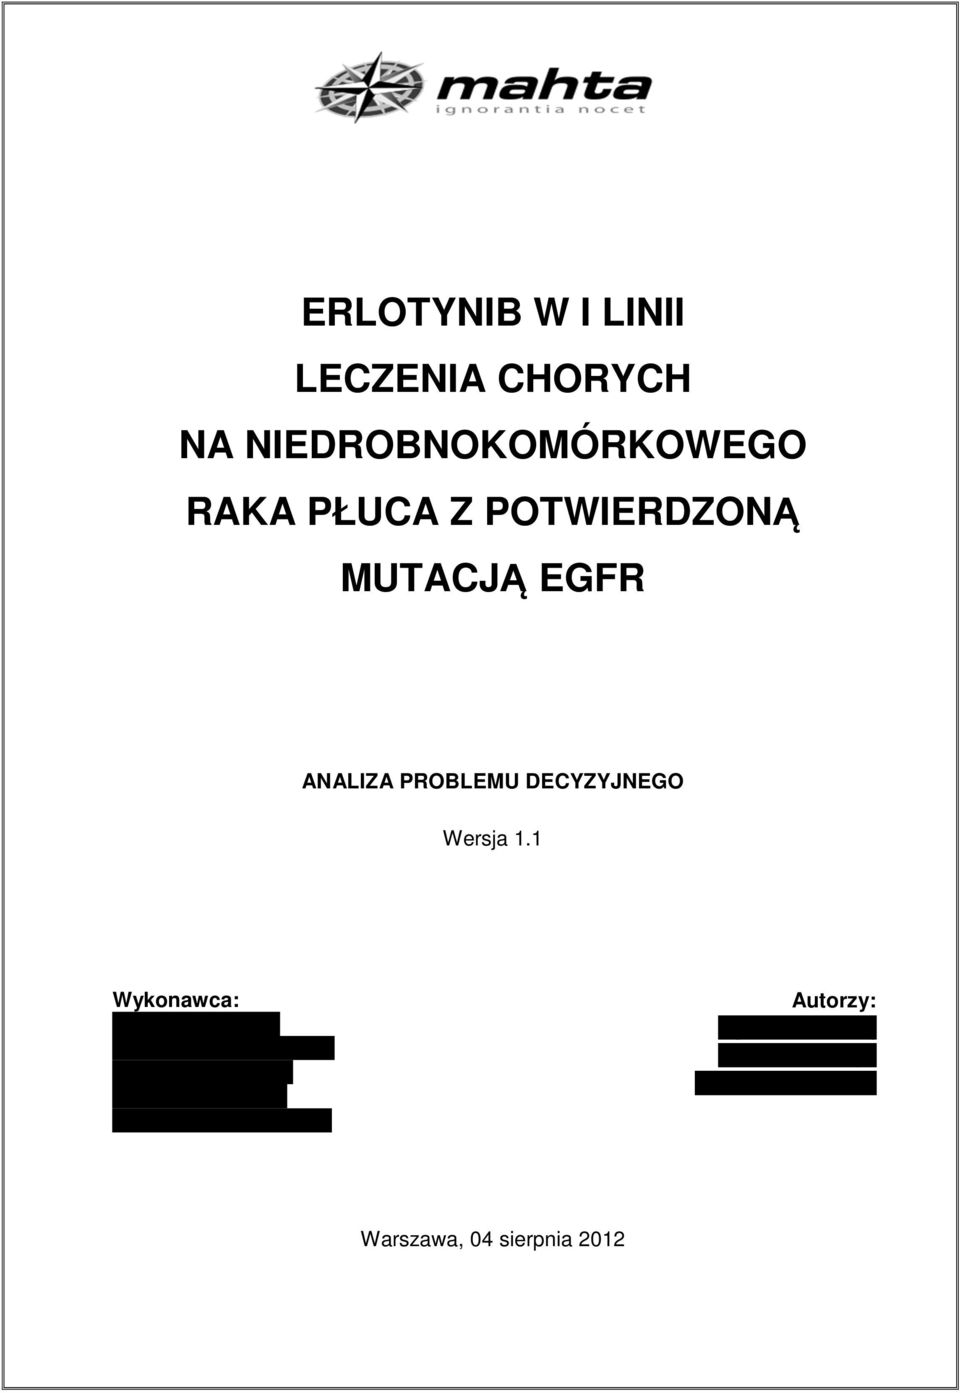 1 Wykonawca: MAHTA Sp. z o.o. ul. Rejtana 17/5 02-516 Warszawa Tel.